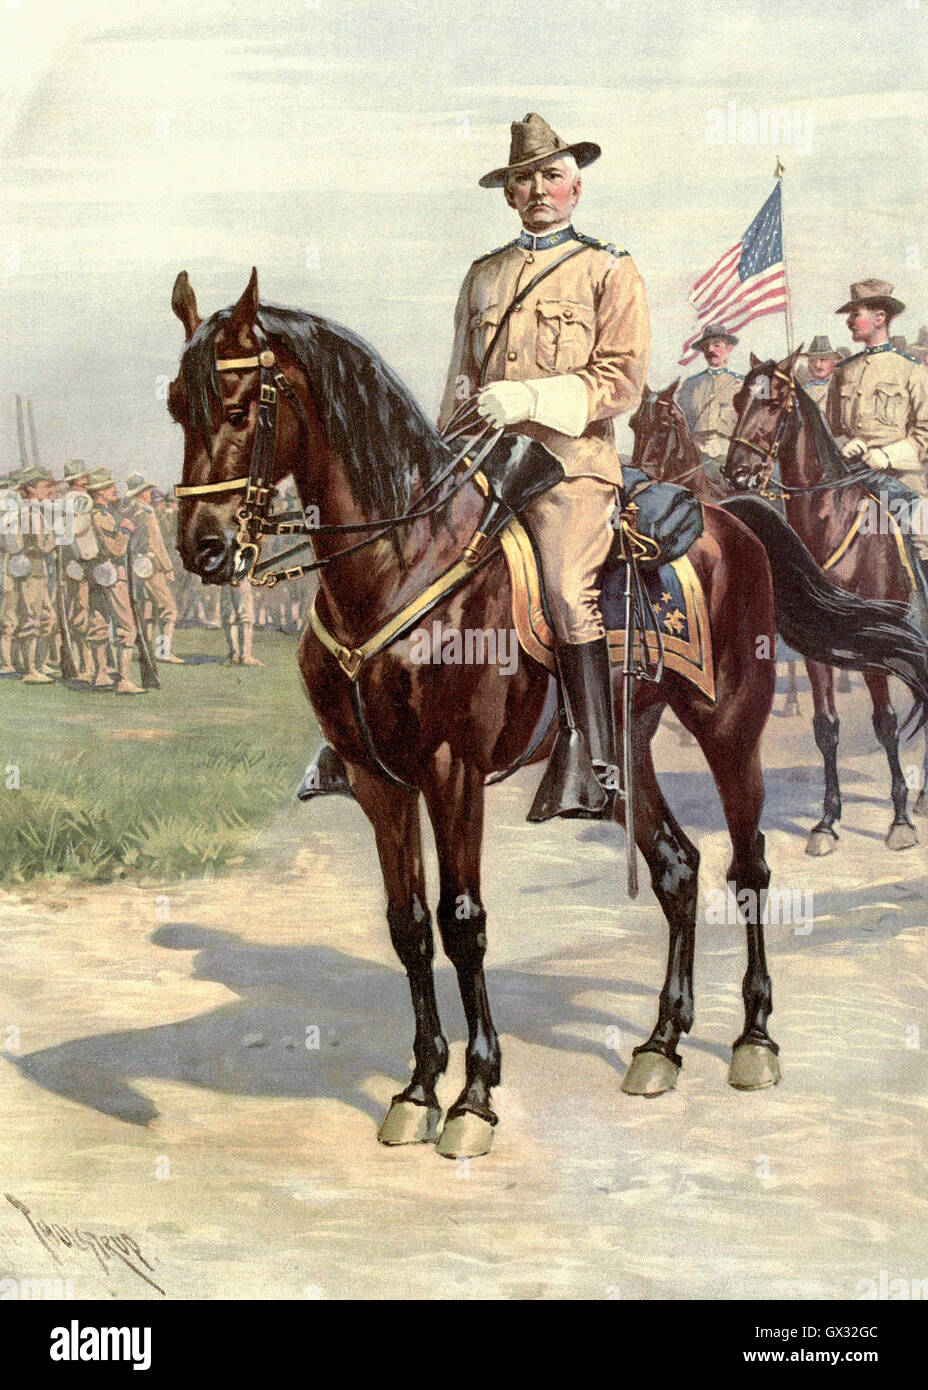 Major General Wesley Merritt, 1836-1910. General der United States Army während des amerikanischen Bürgerkrieges und des Spanisch-Amerikanischen Krieges.  Nach der Zeichnung von T. de Thulstrup. Stockfoto